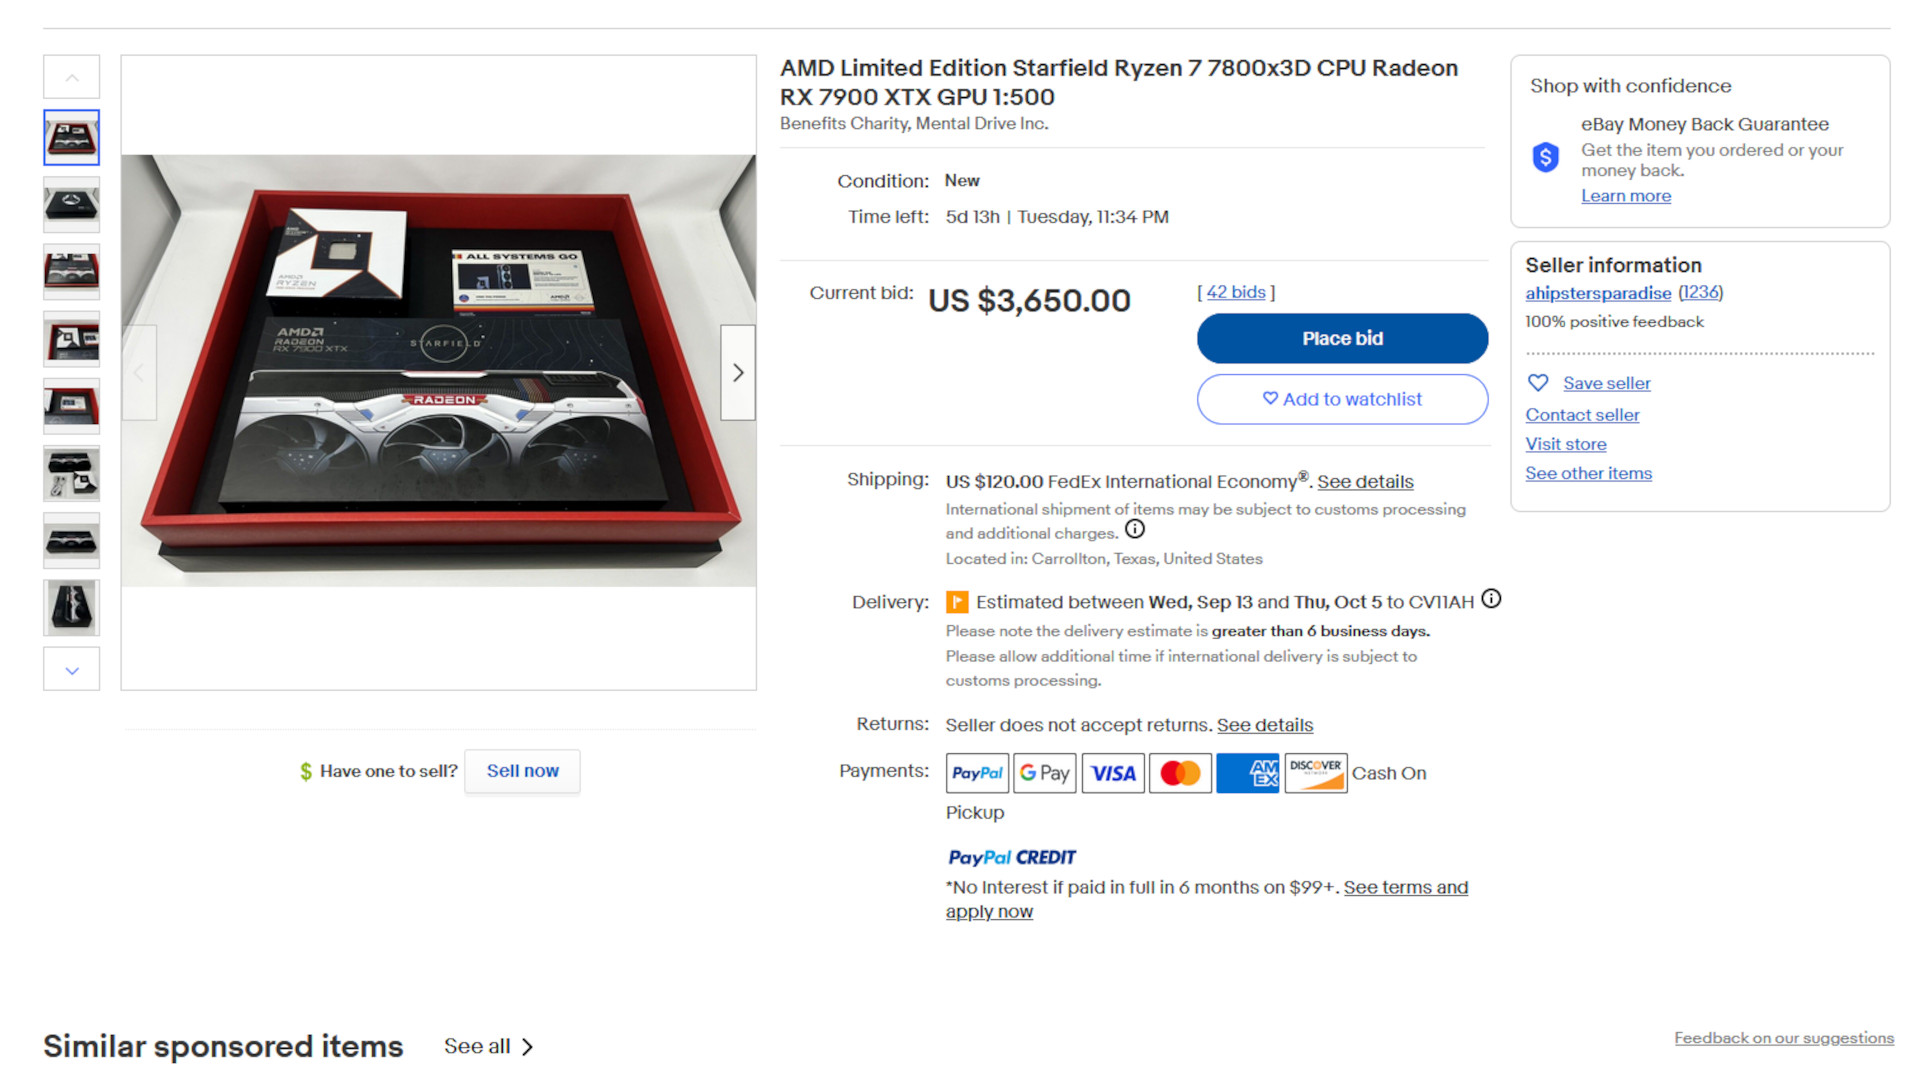 Ein Screenshot des eBay-Angebots für das AMD Radeon RX 7900 XTX- und Ryzen 7 7800X3D Starfield Limited Edition-Paket